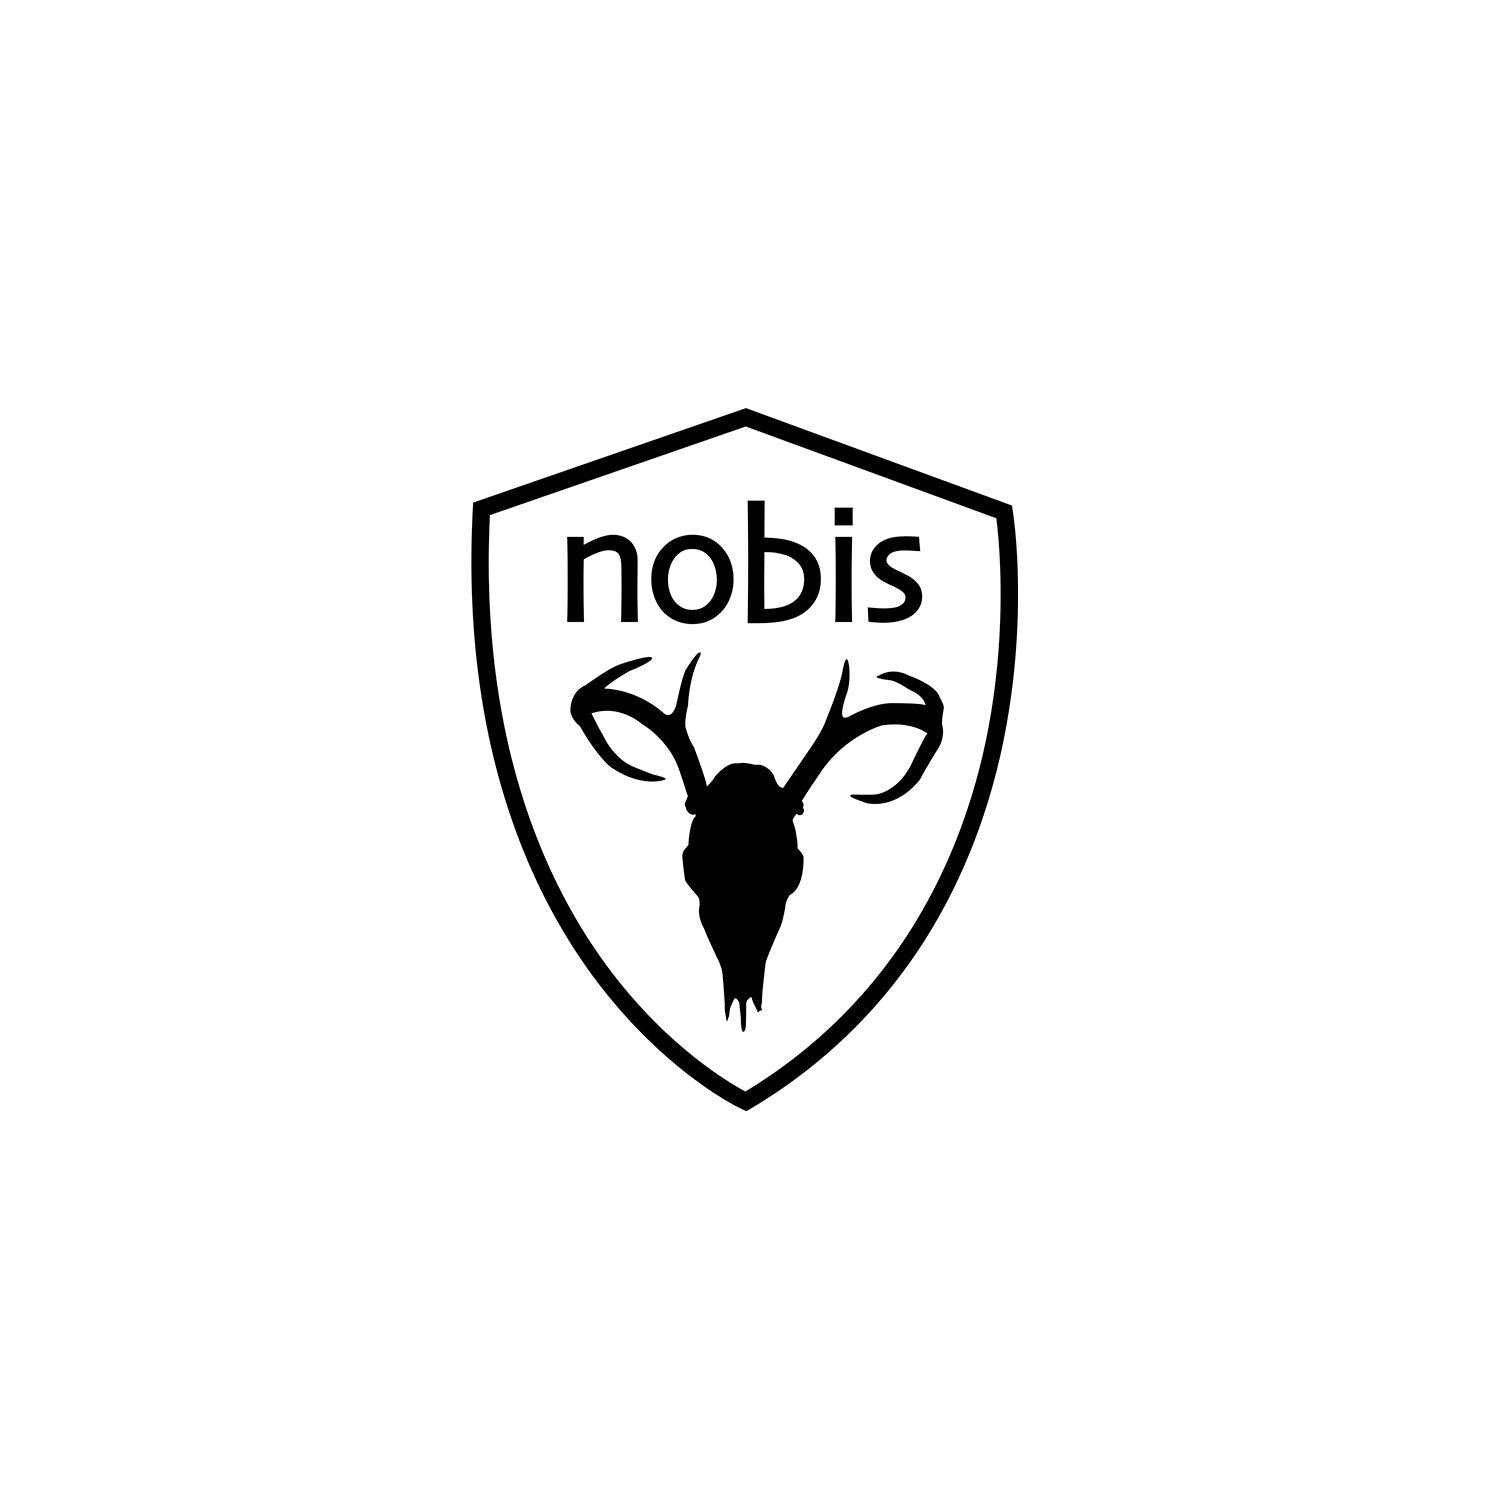 NOBIS